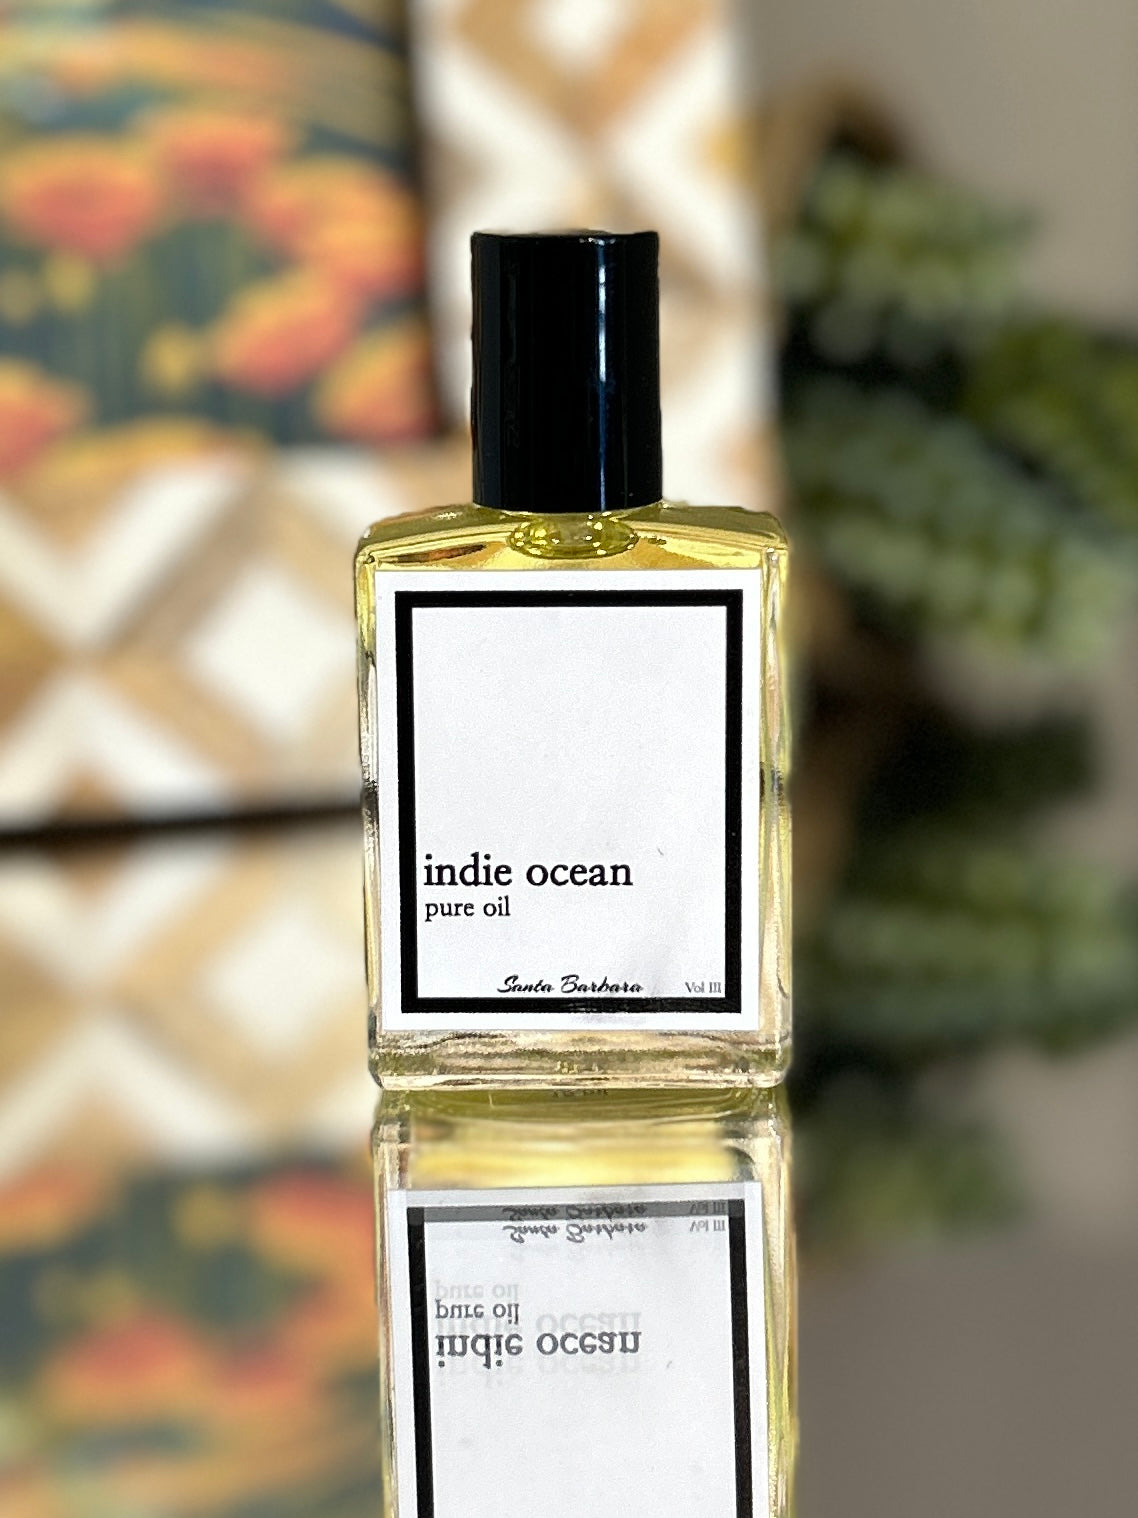 Indie Ocean Pure Oil